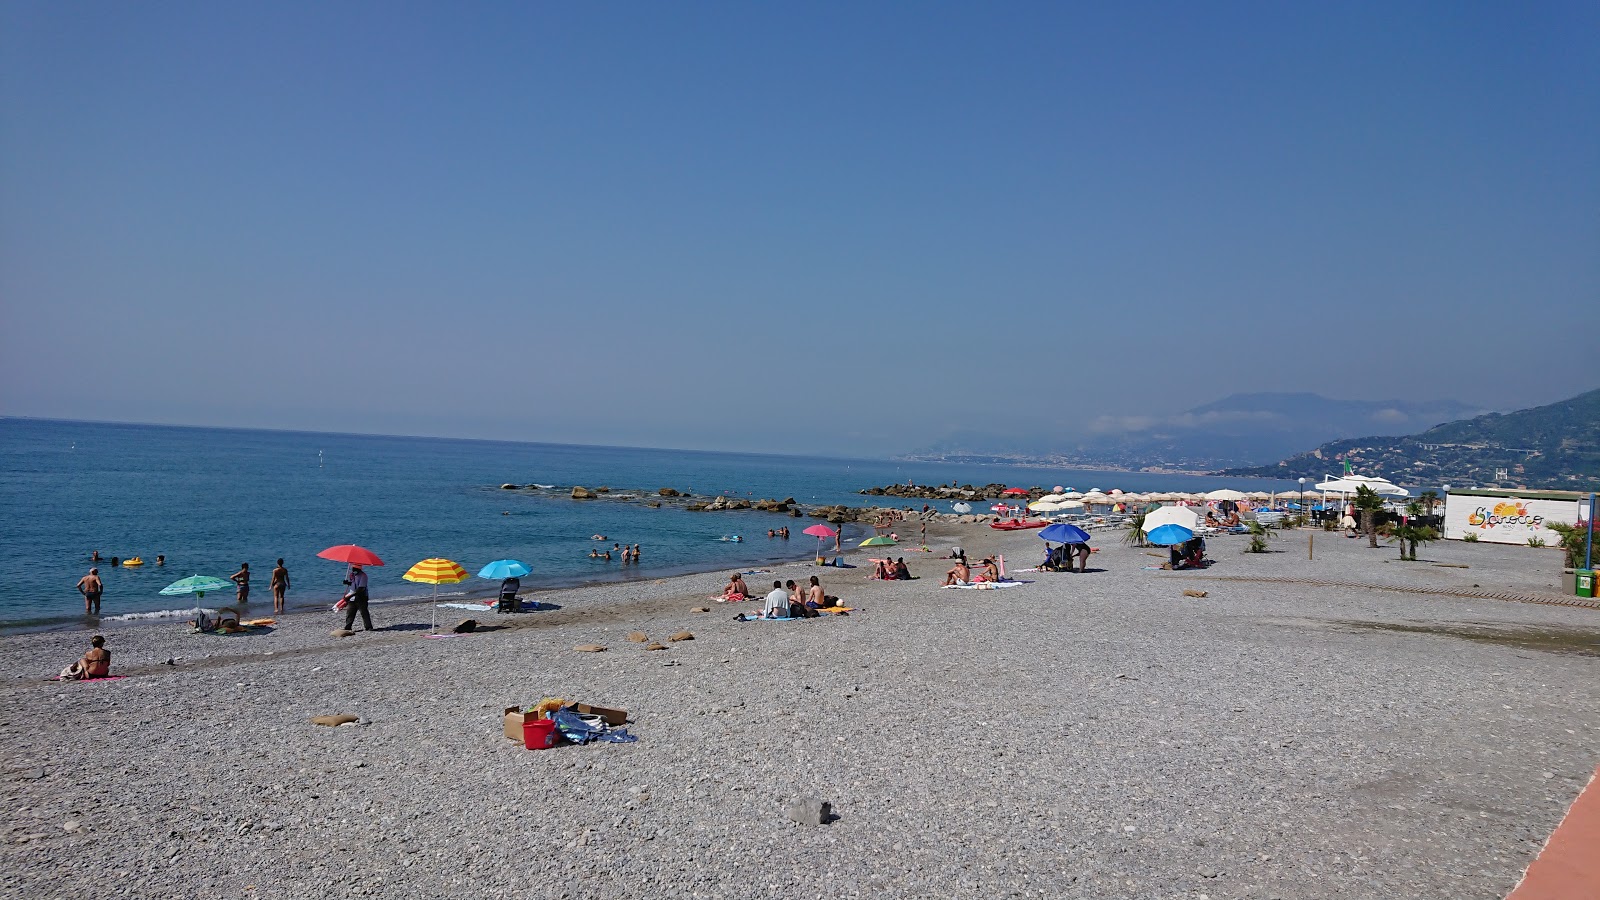 Foto von Spiaggia Ventimiglia mit blaues wasser Oberfläche